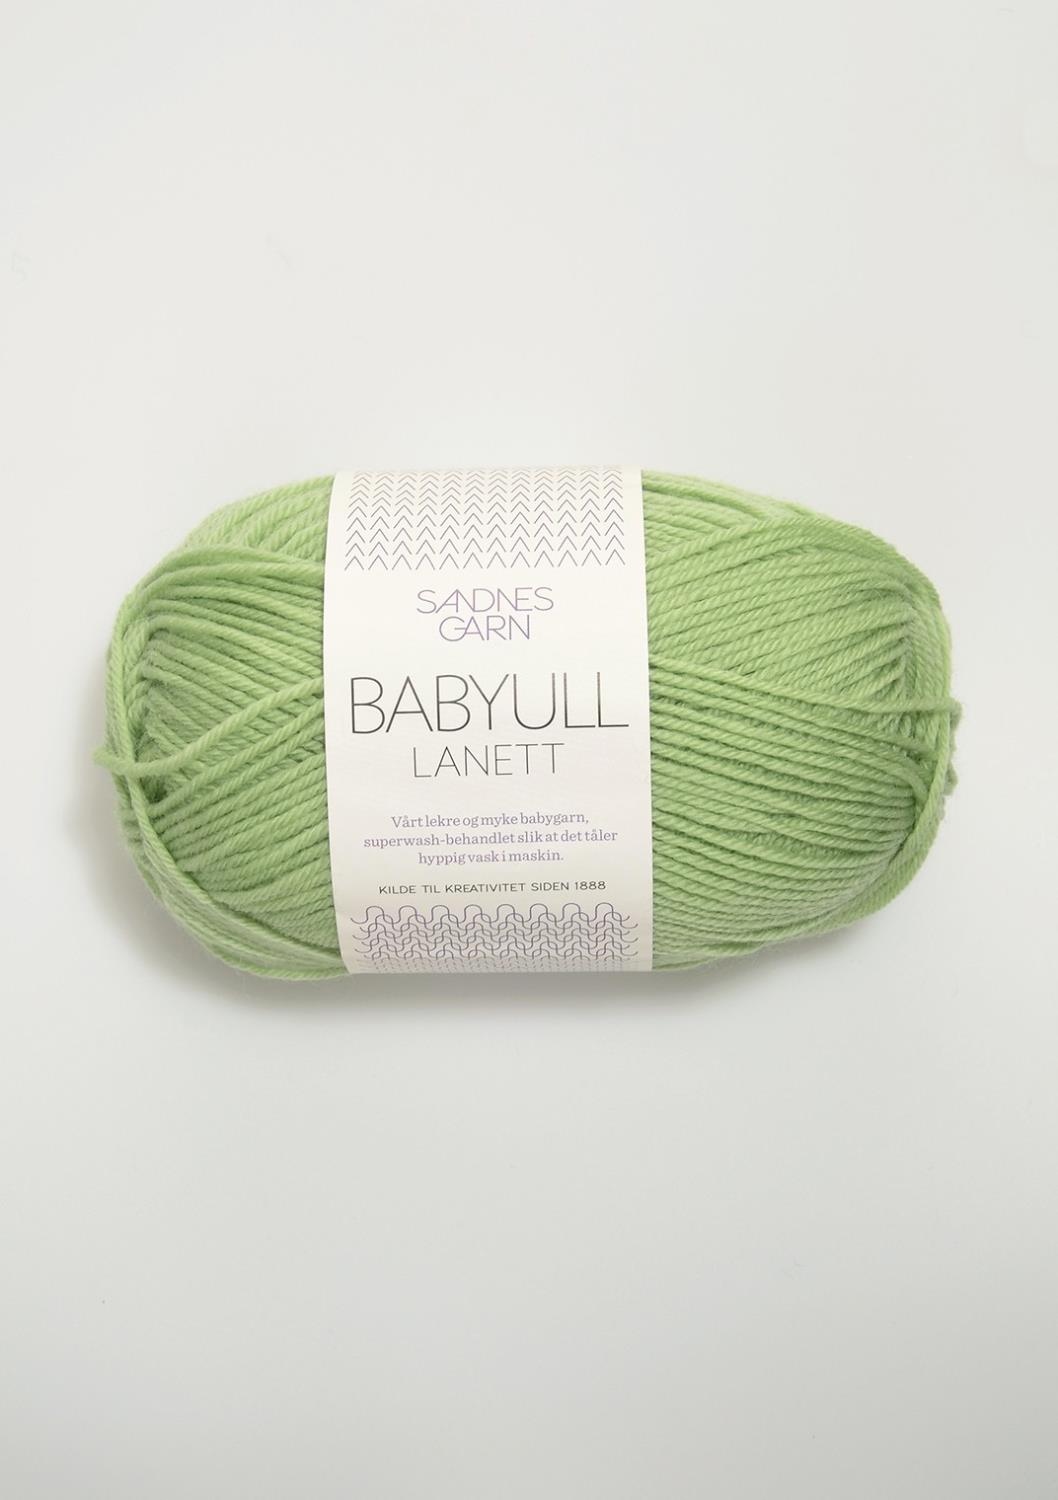 Lanett Babyull Sandnes 8913 - Lys Eplegrønn